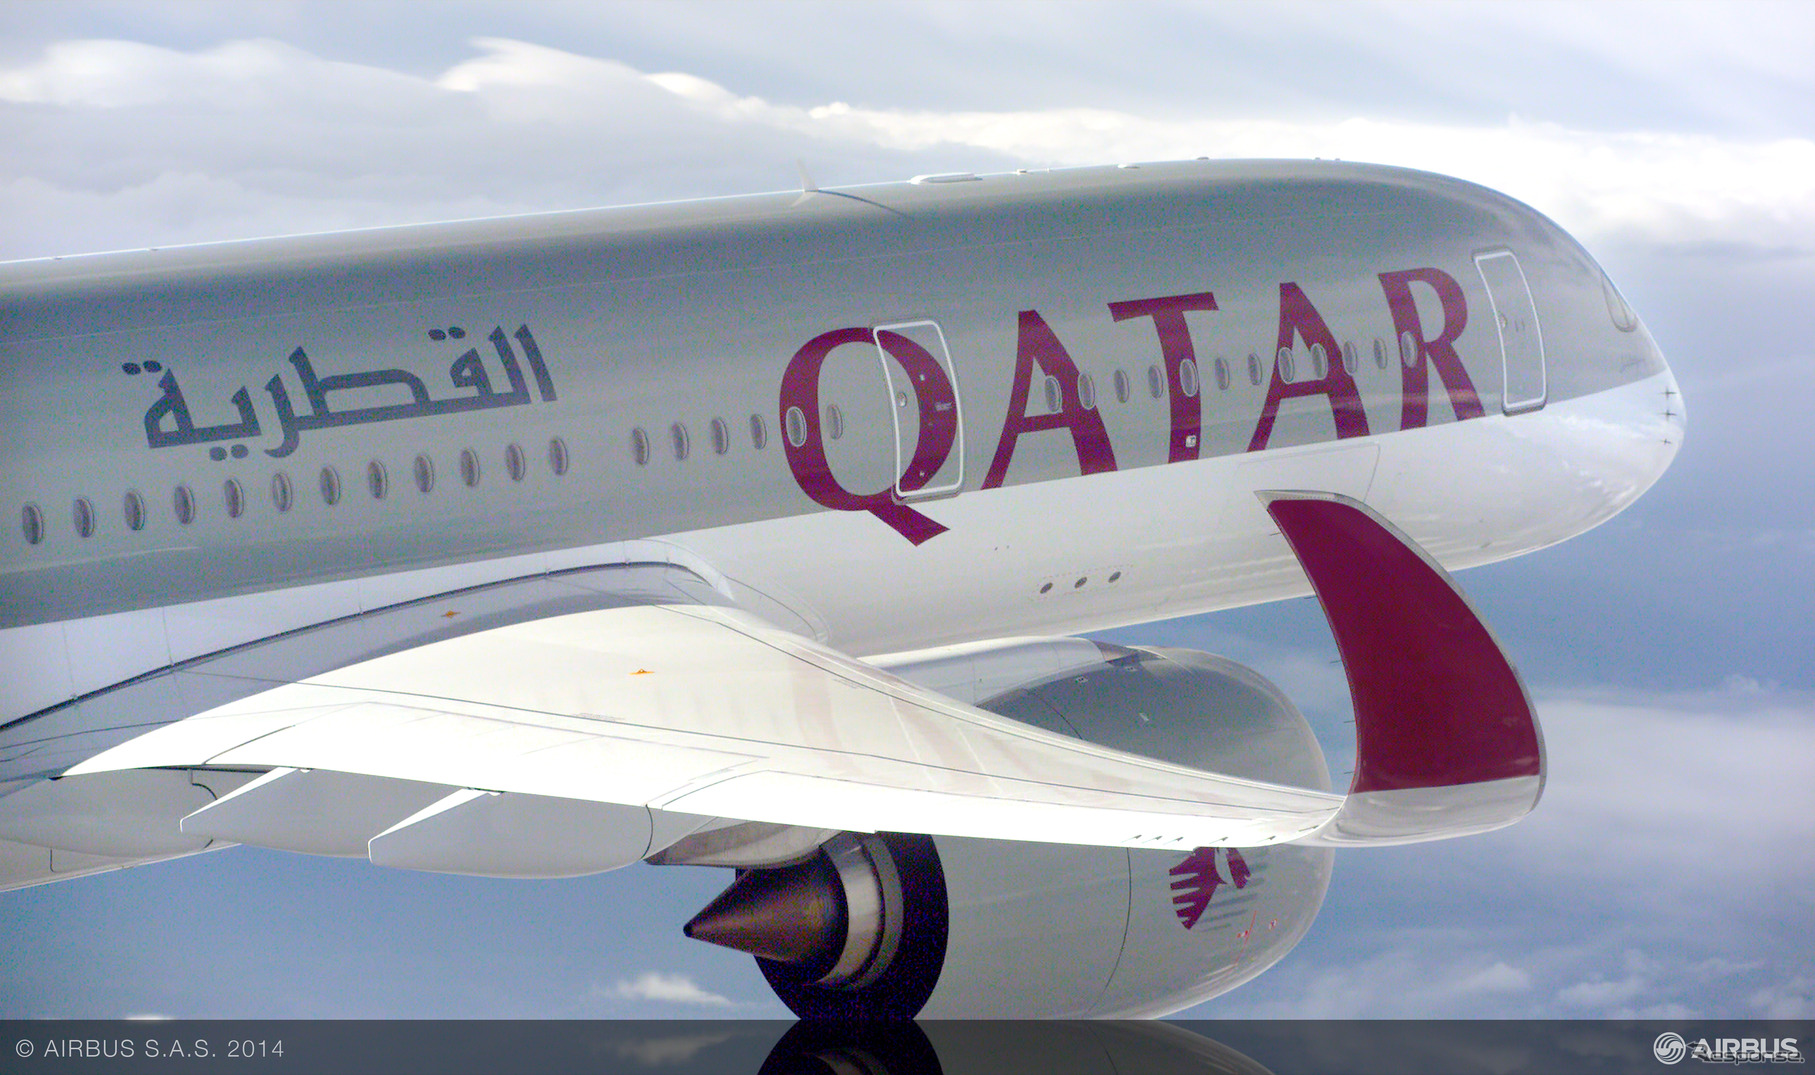 エアバス、A350XWB初号機をローンチカスタマーであるカタール航空に引渡し